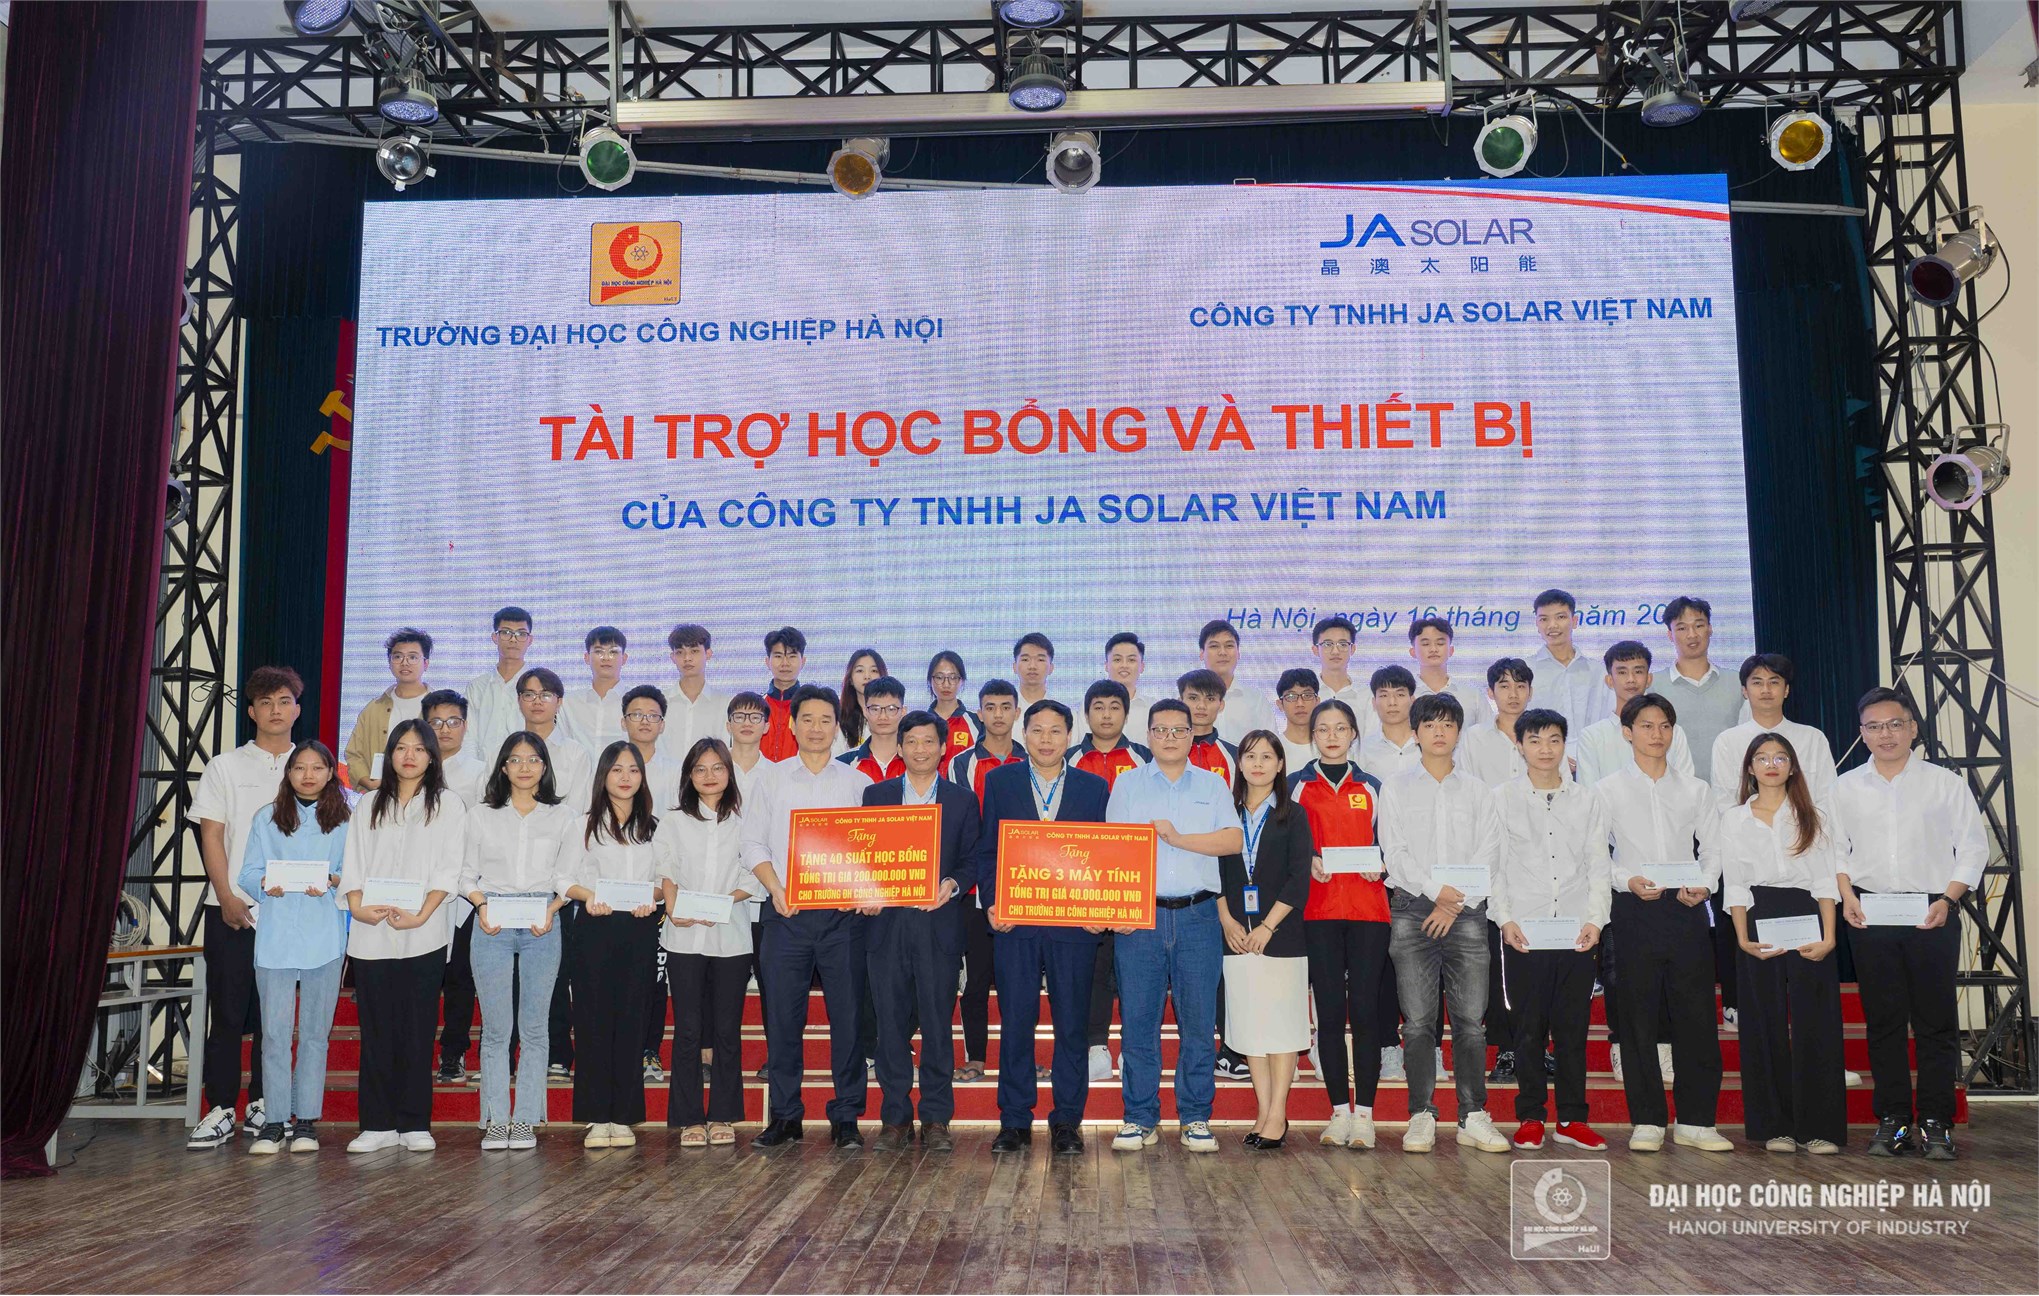 Tiếp nhận học bổng và thiết bị tài trợ từ Công ty JA Solar Việt Nam